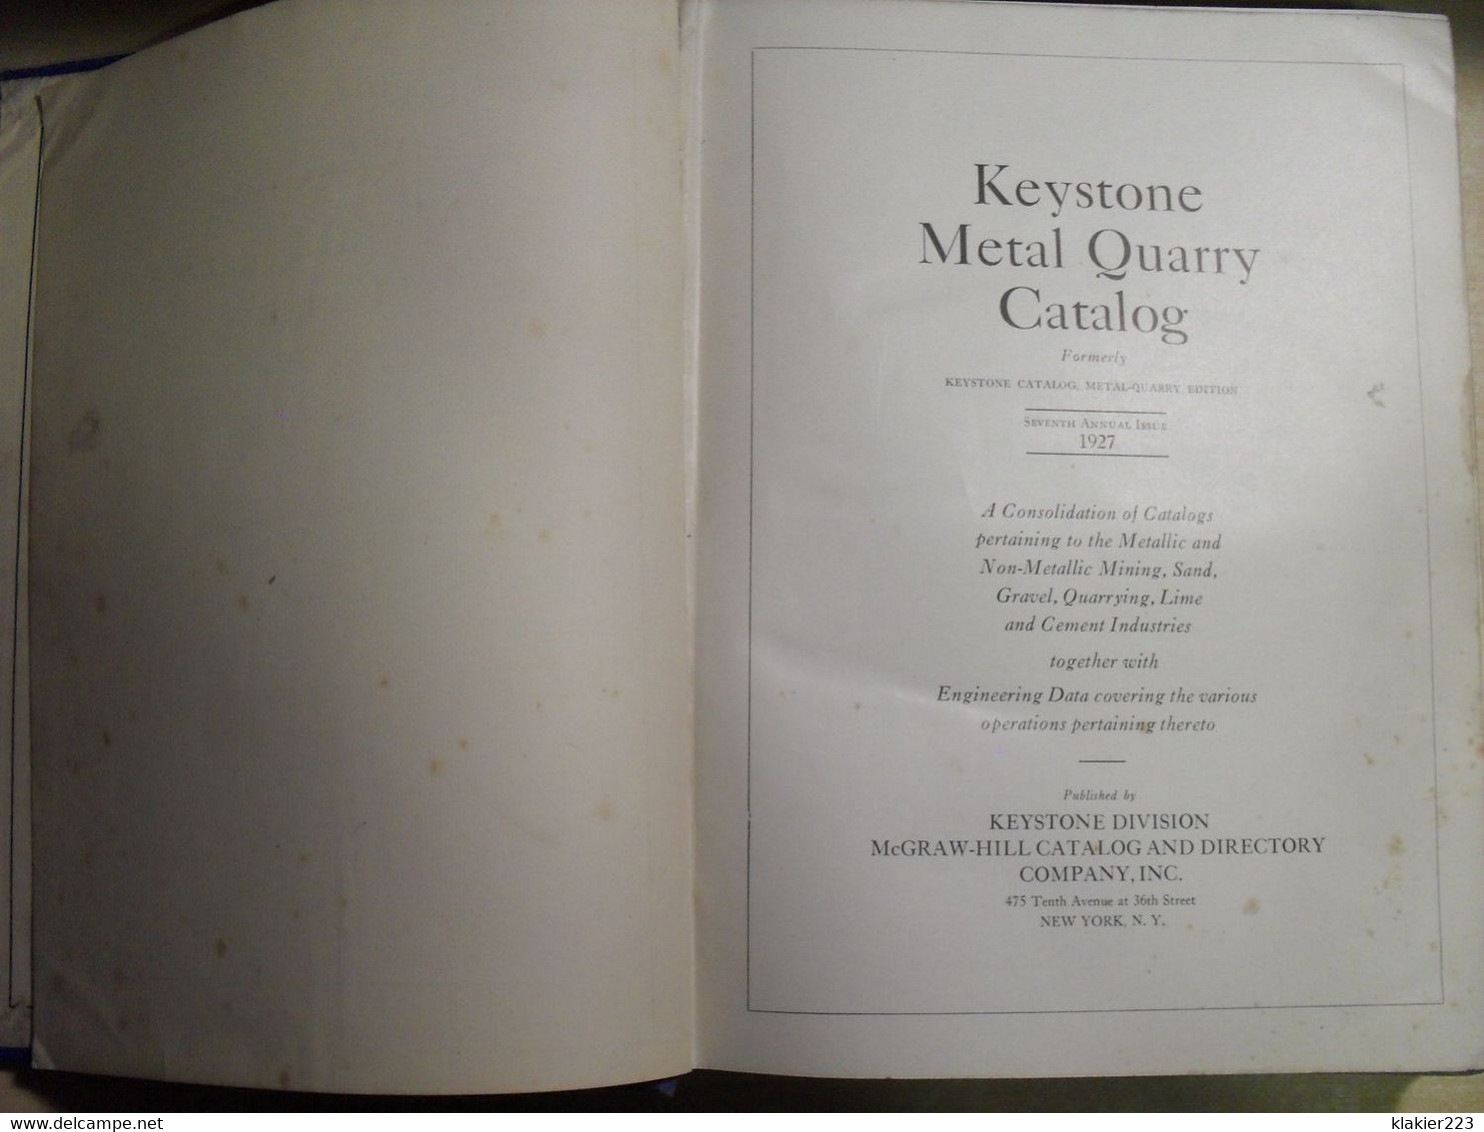 Keystone Metal Quarry Catalog 1927